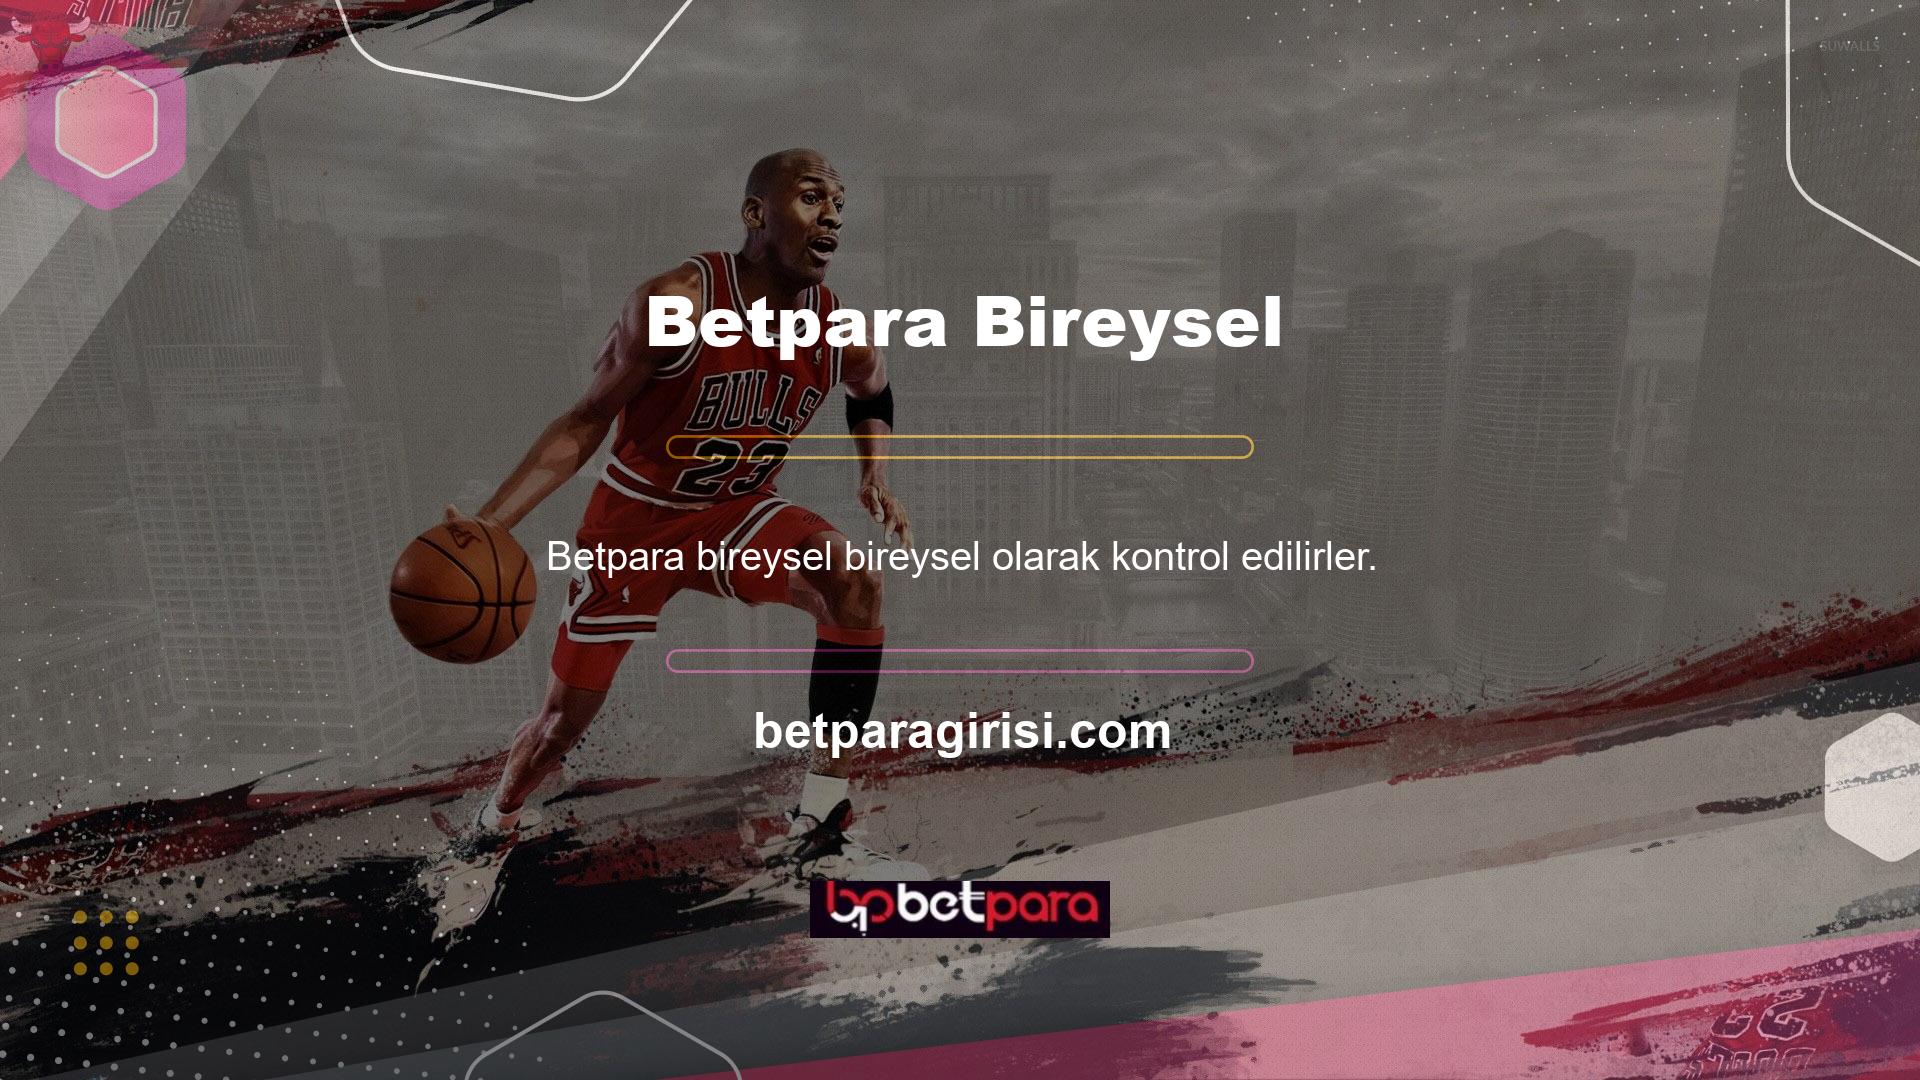 Betpara TV Canlı Maç İzle, bahis sitelerinde bulunan ücretsiz uygulamalardan biridir